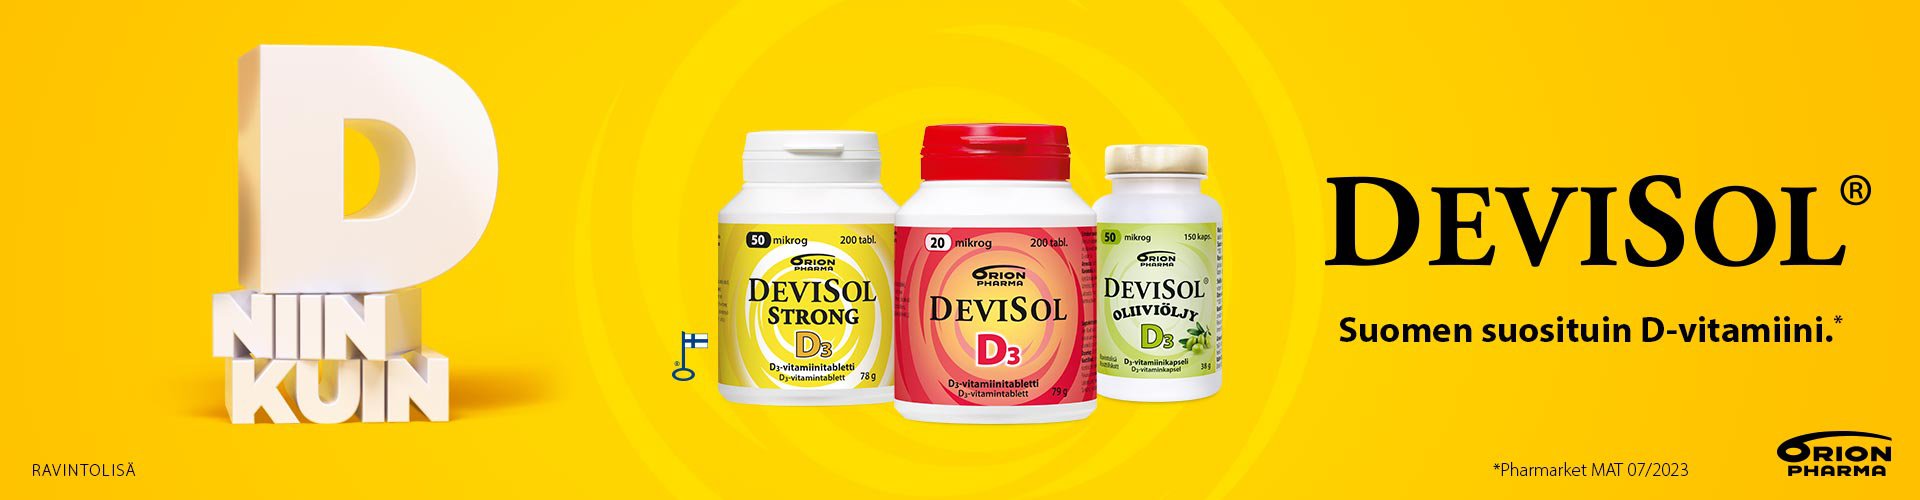 Devisol on Suomen suosituin D-vitamiini*. Devisol tuotesarjalla on avainlippu. Monipuolisesta tuotesarjasta löydät itsellesi sopivan tuotteen. Tuotesarjassa on huomioitu myös vauvat, erikoisruokavaliot sekä vahvempiakin valmisteita suosivat.